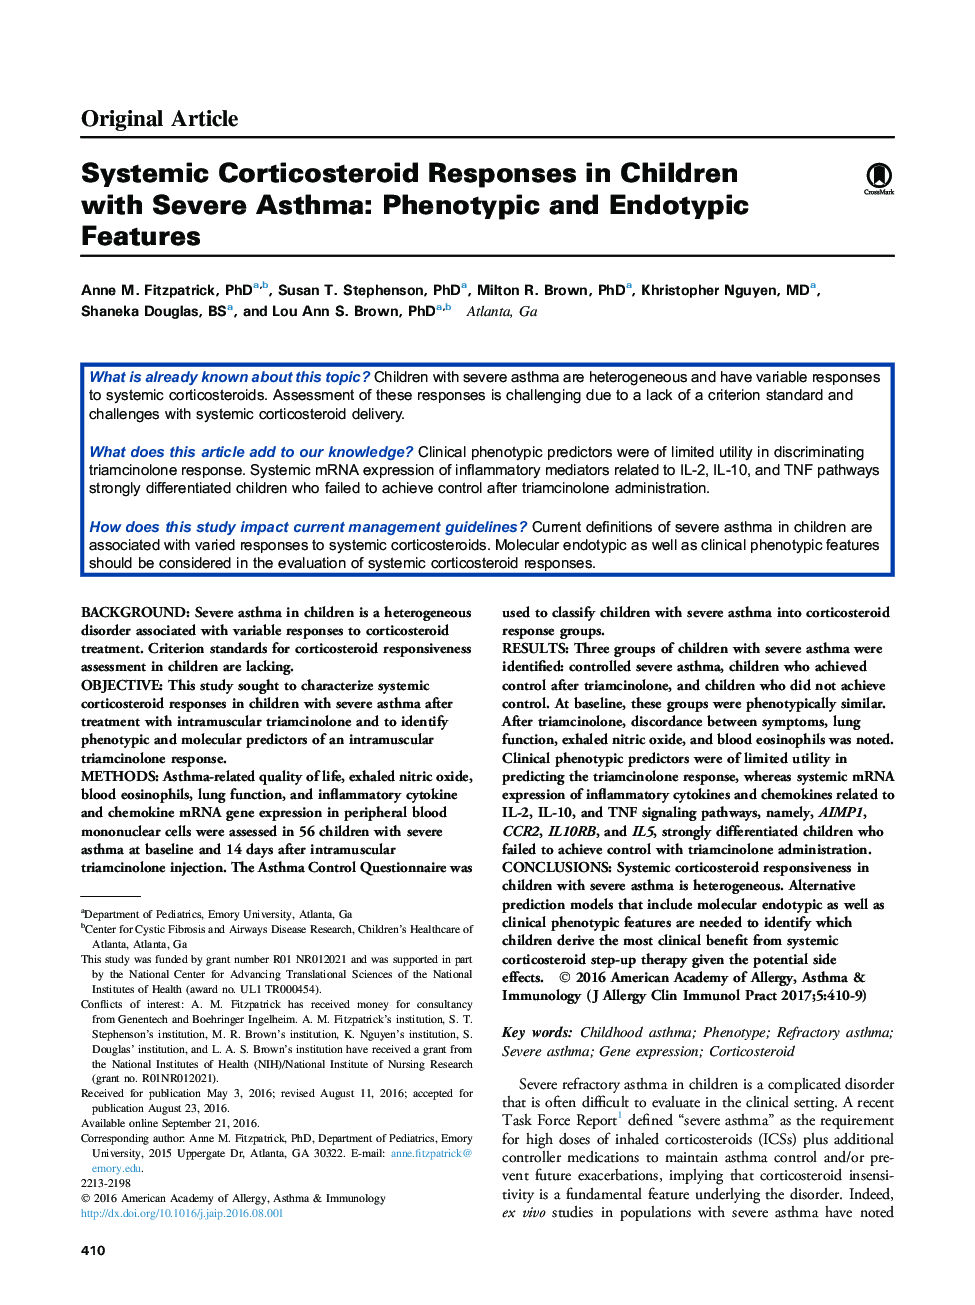 پاسخ های کورتیکواستروئید سیستمیک در کودکان مبتلا به آسم شدید: ویژگی های فنوتیپیک و اندوتایپی 